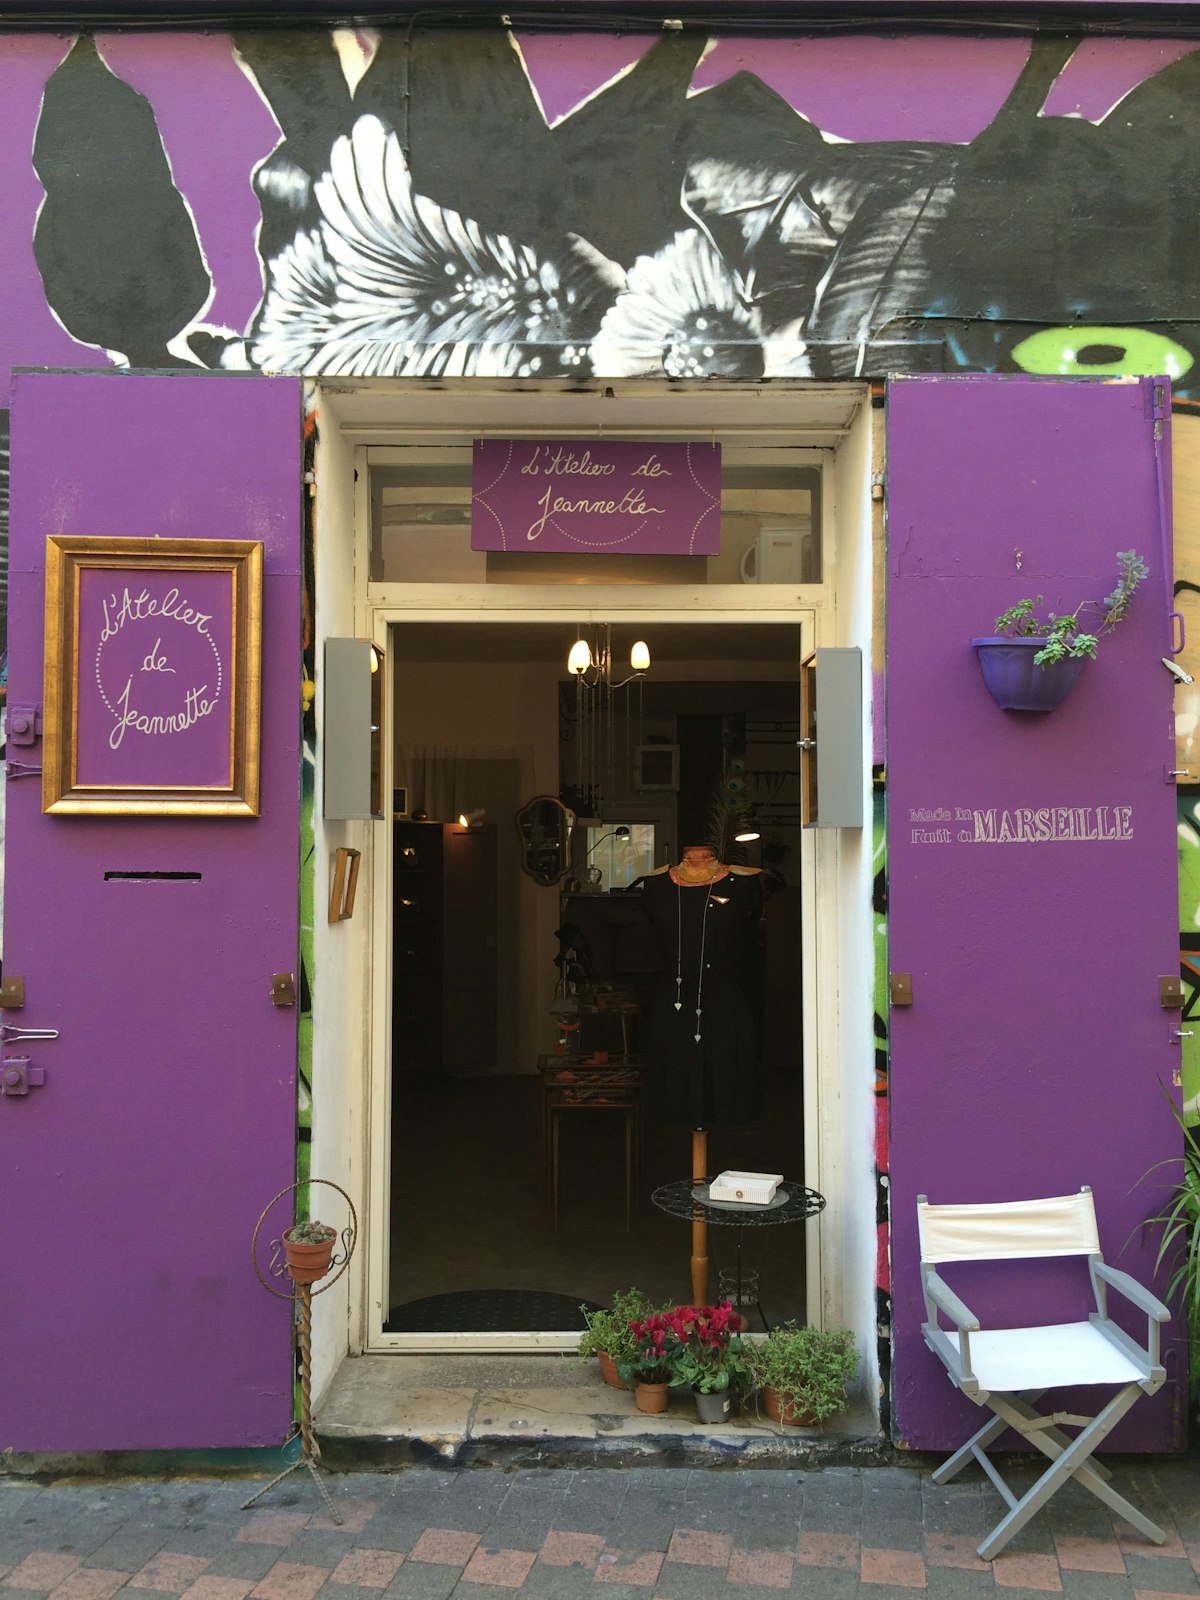 L'Atelier de Jeannette, artisan jeweller in the Cours Julien neighborhood of Marseille, France.